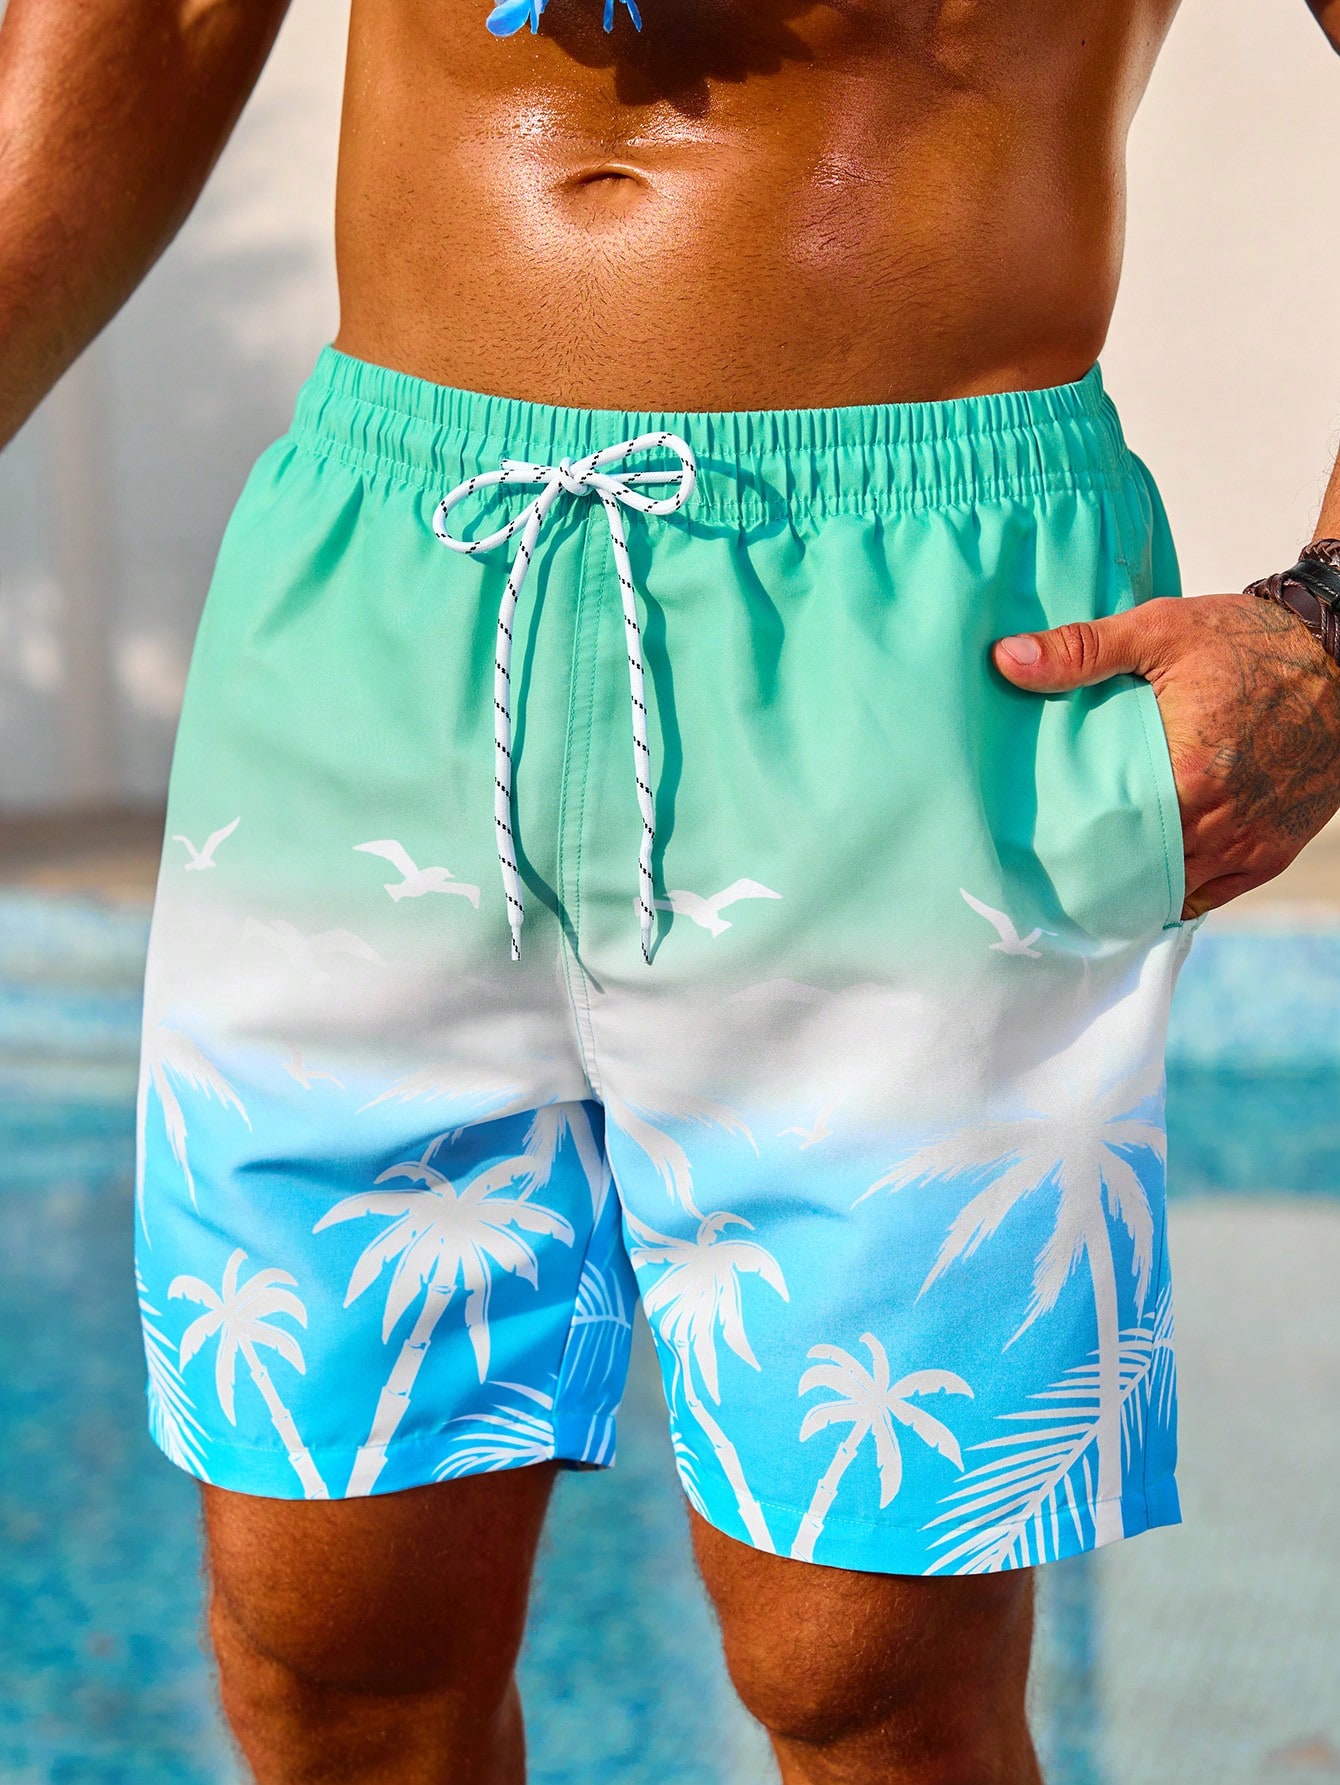 Мужские пляжные шорты Manfinity с принтом пальм и завязками на талии, многоцветный